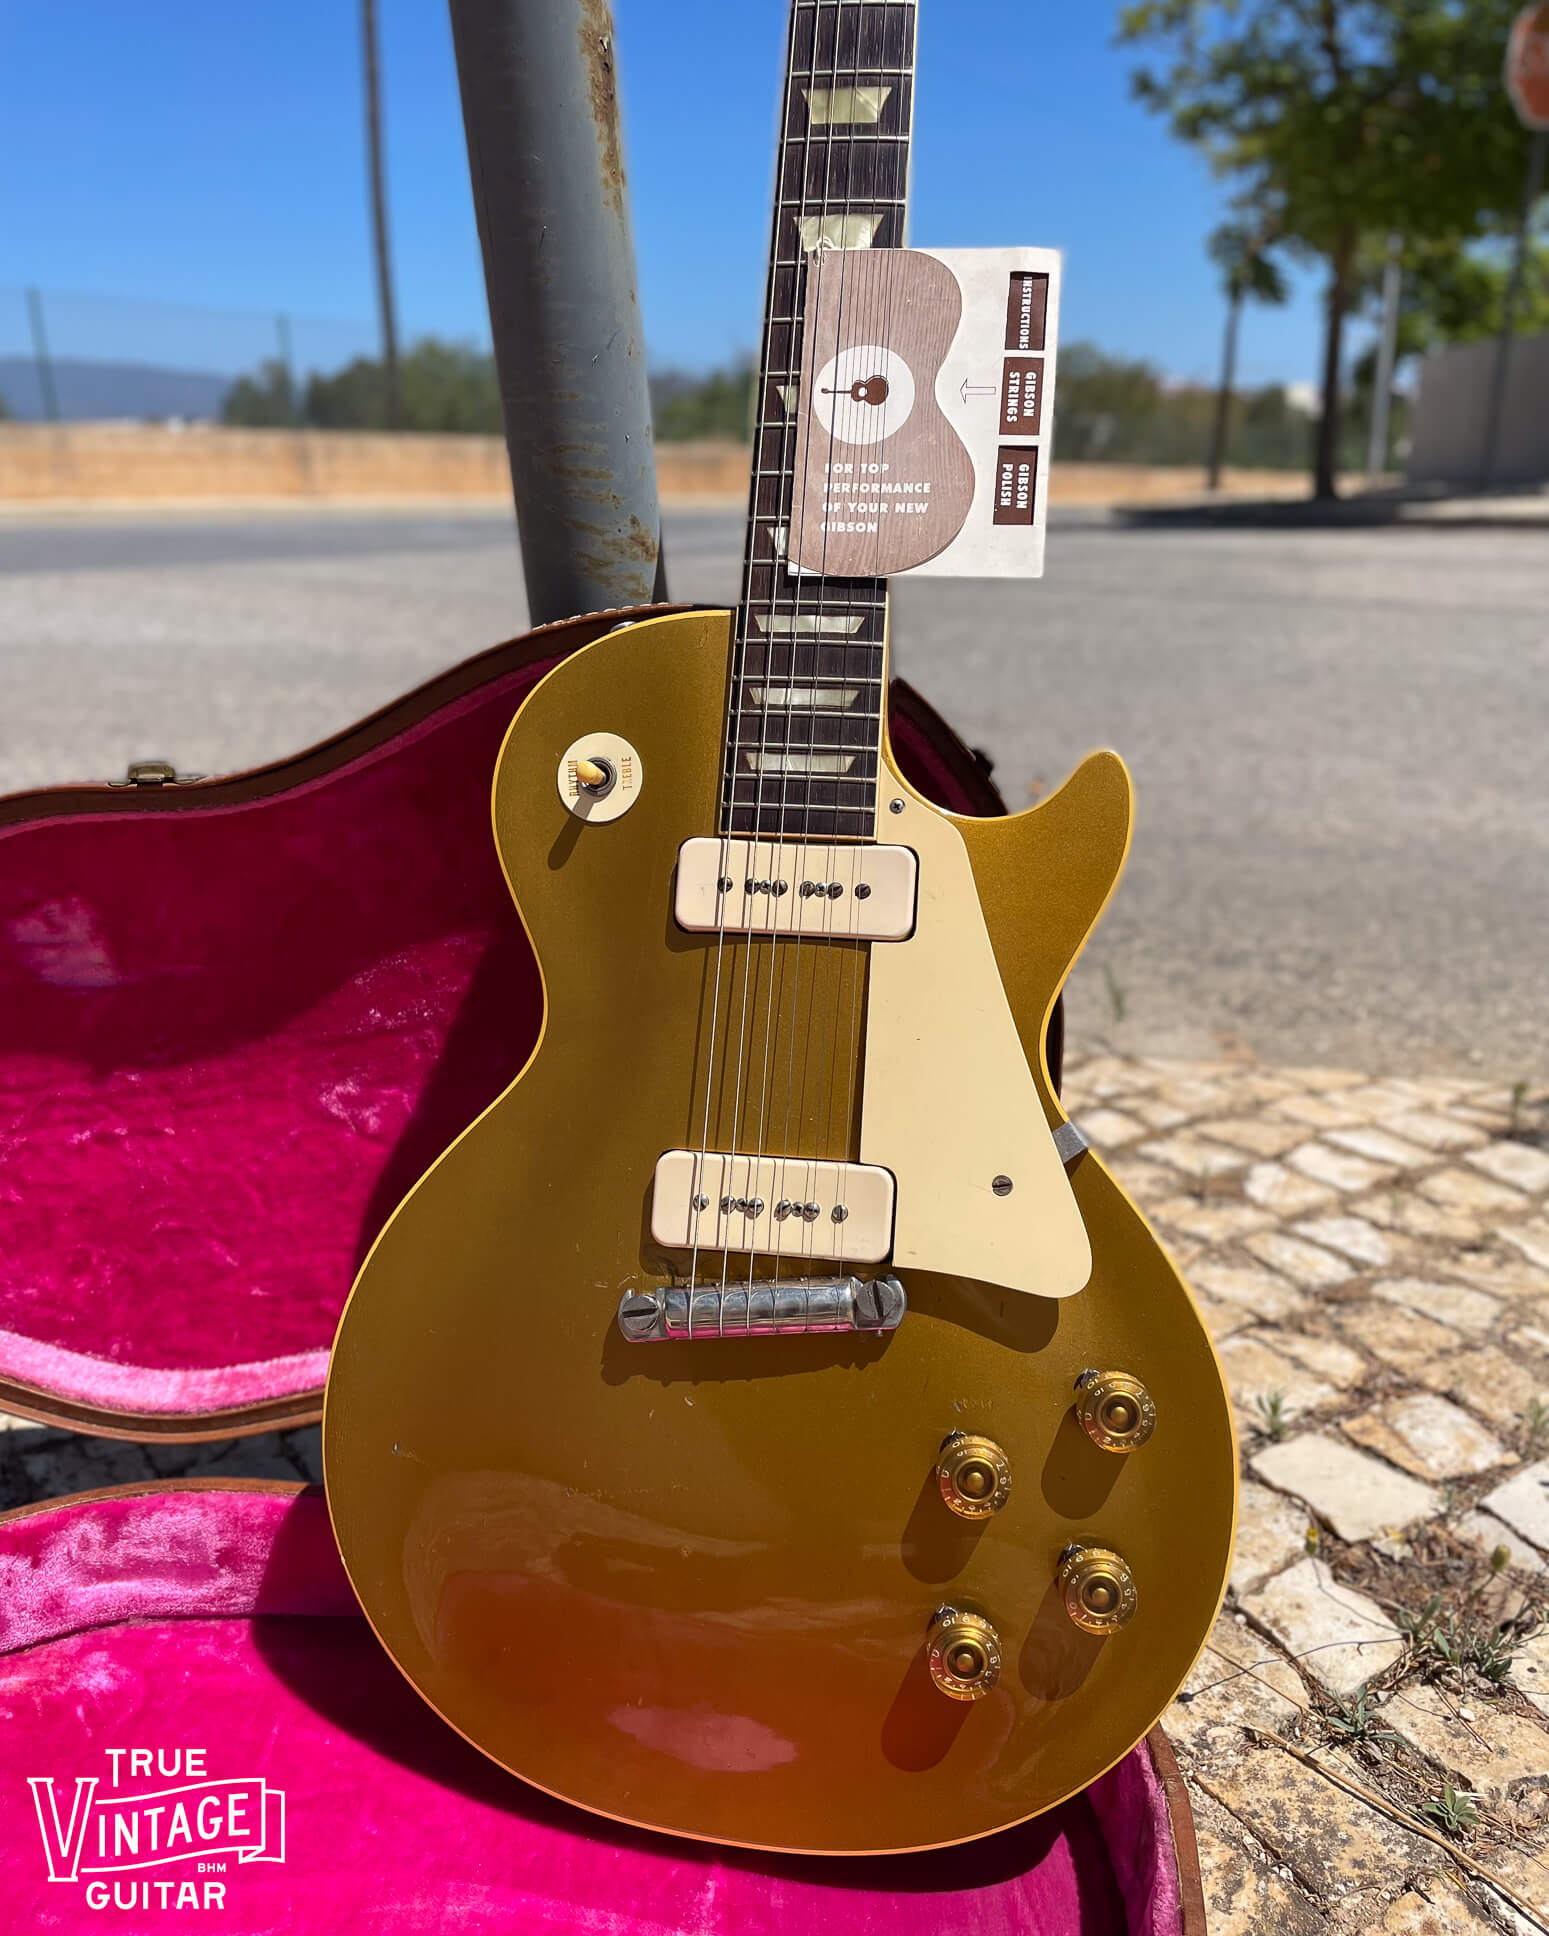 1950s Les Paul guitar in Portugal